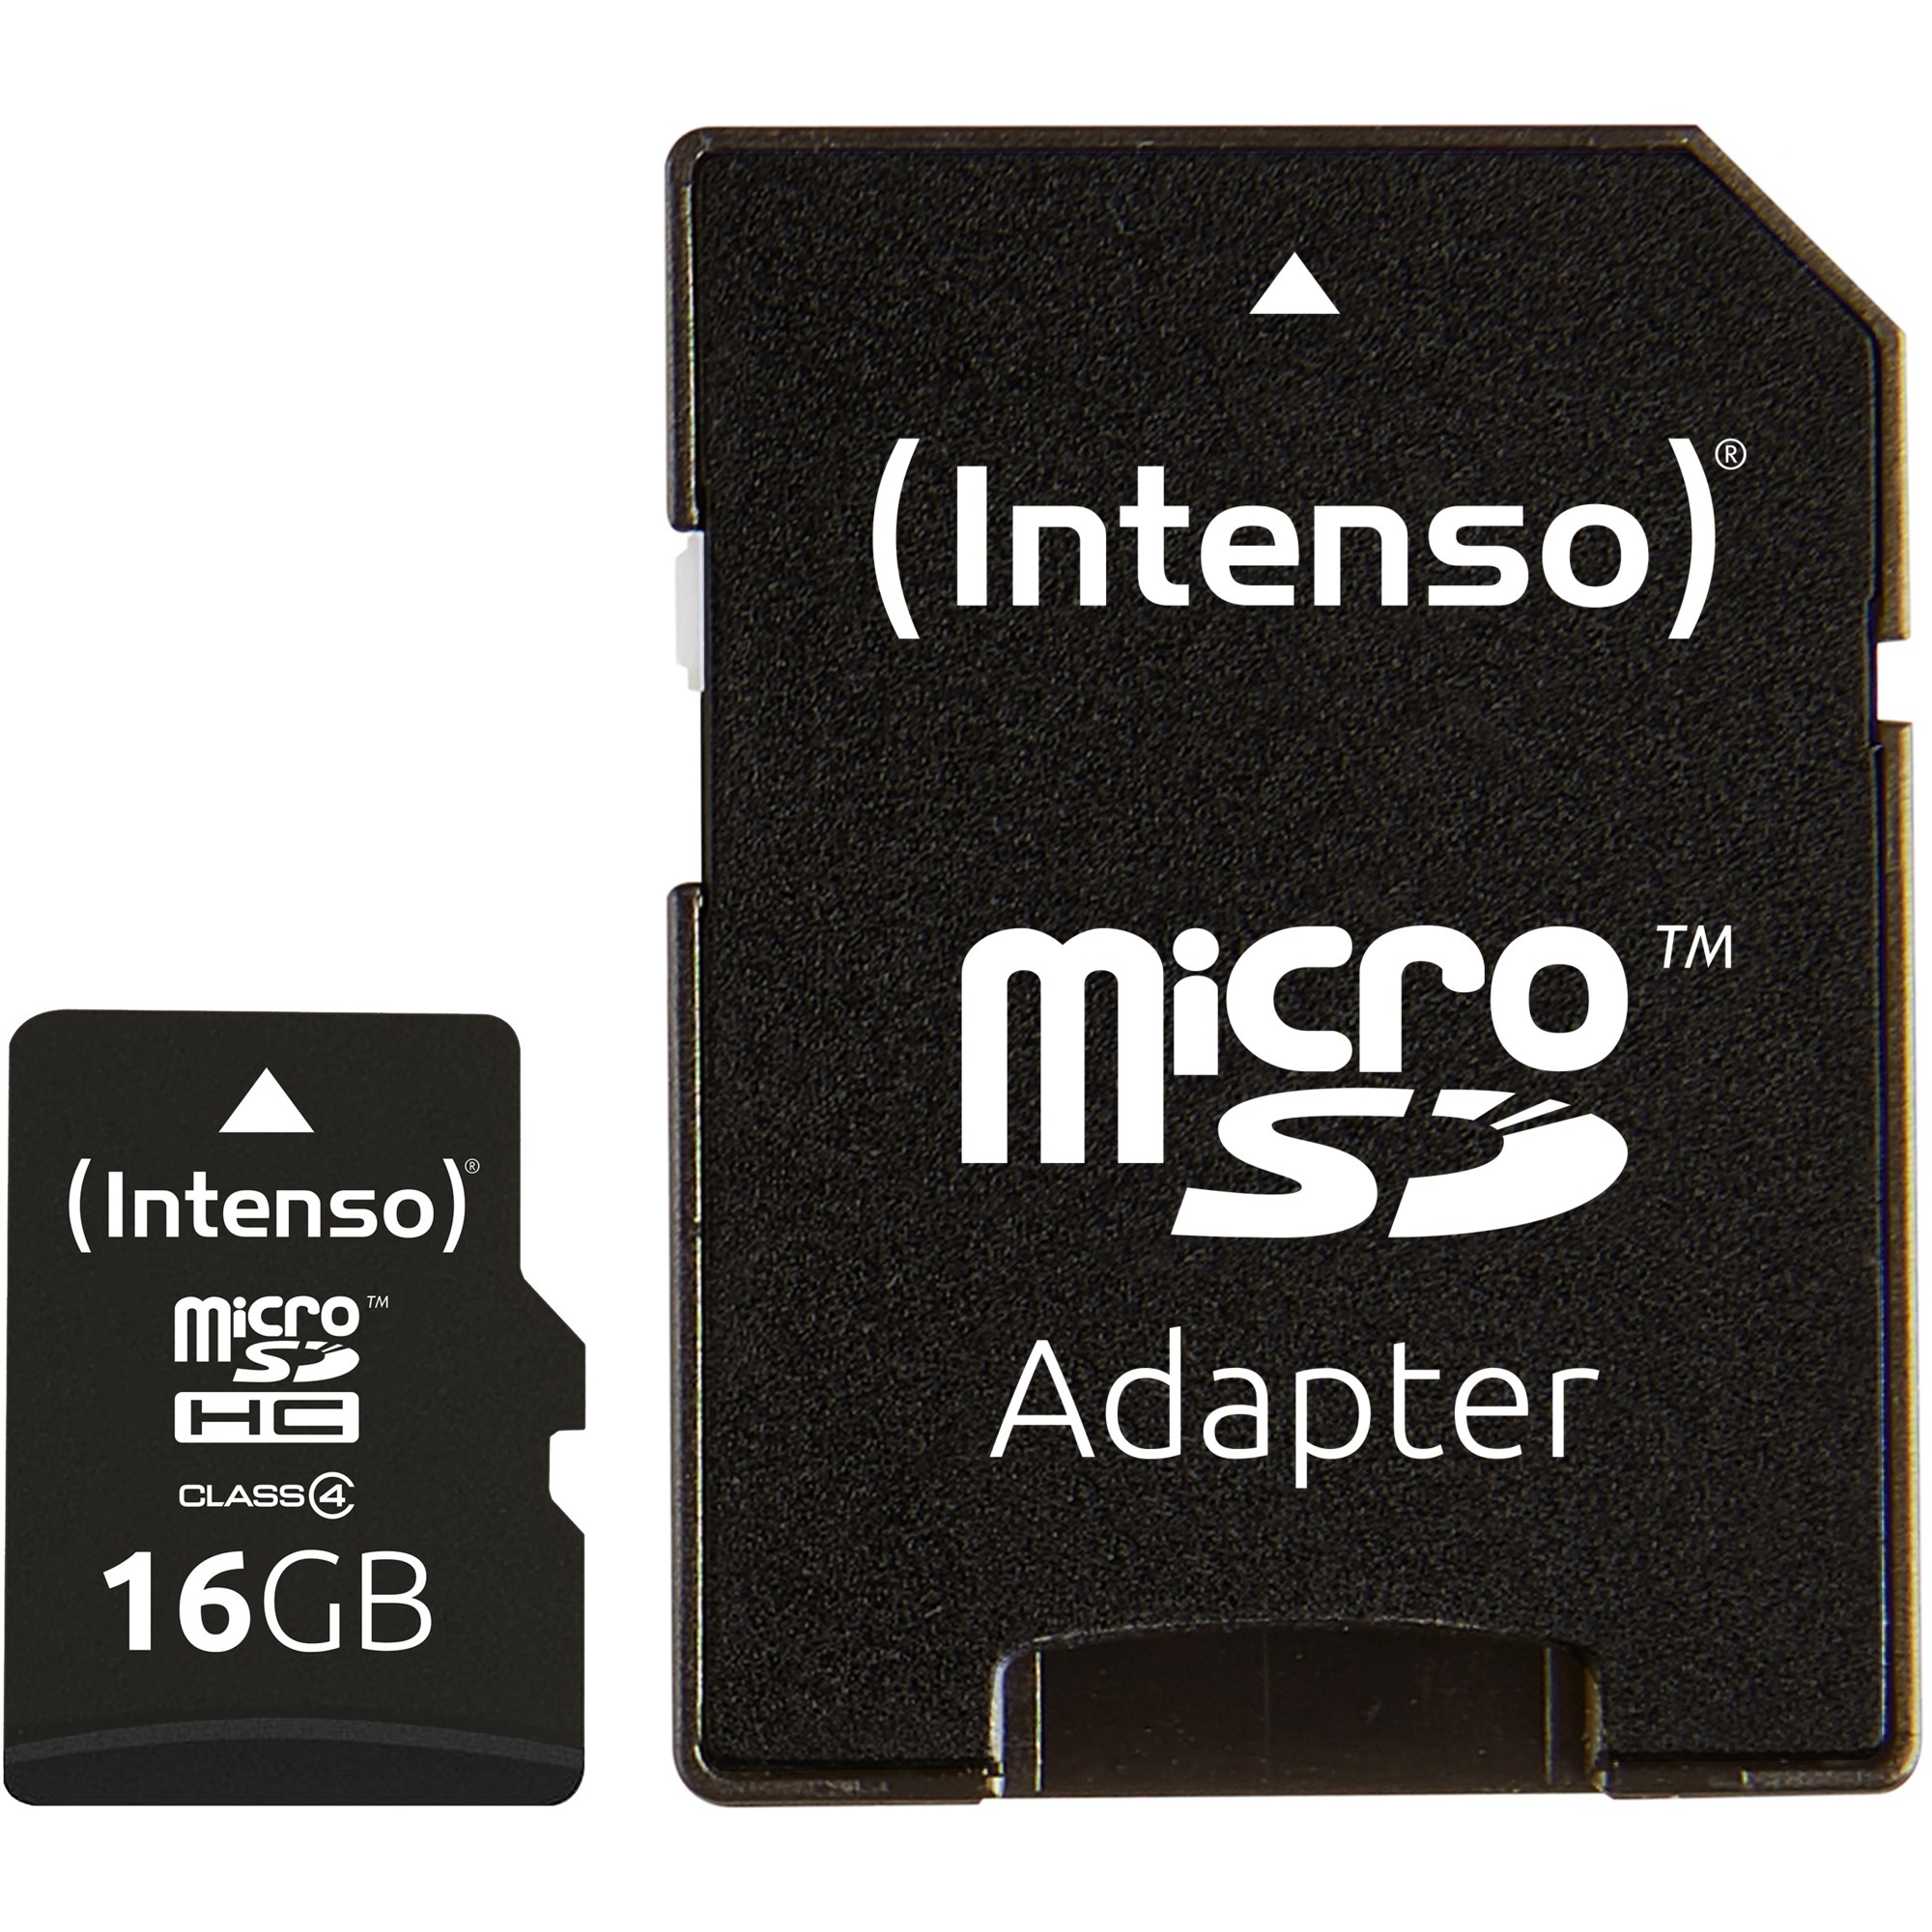 Image of Alternate - microSDHC 16 GB, Speicherkarte online einkaufen bei Alternate